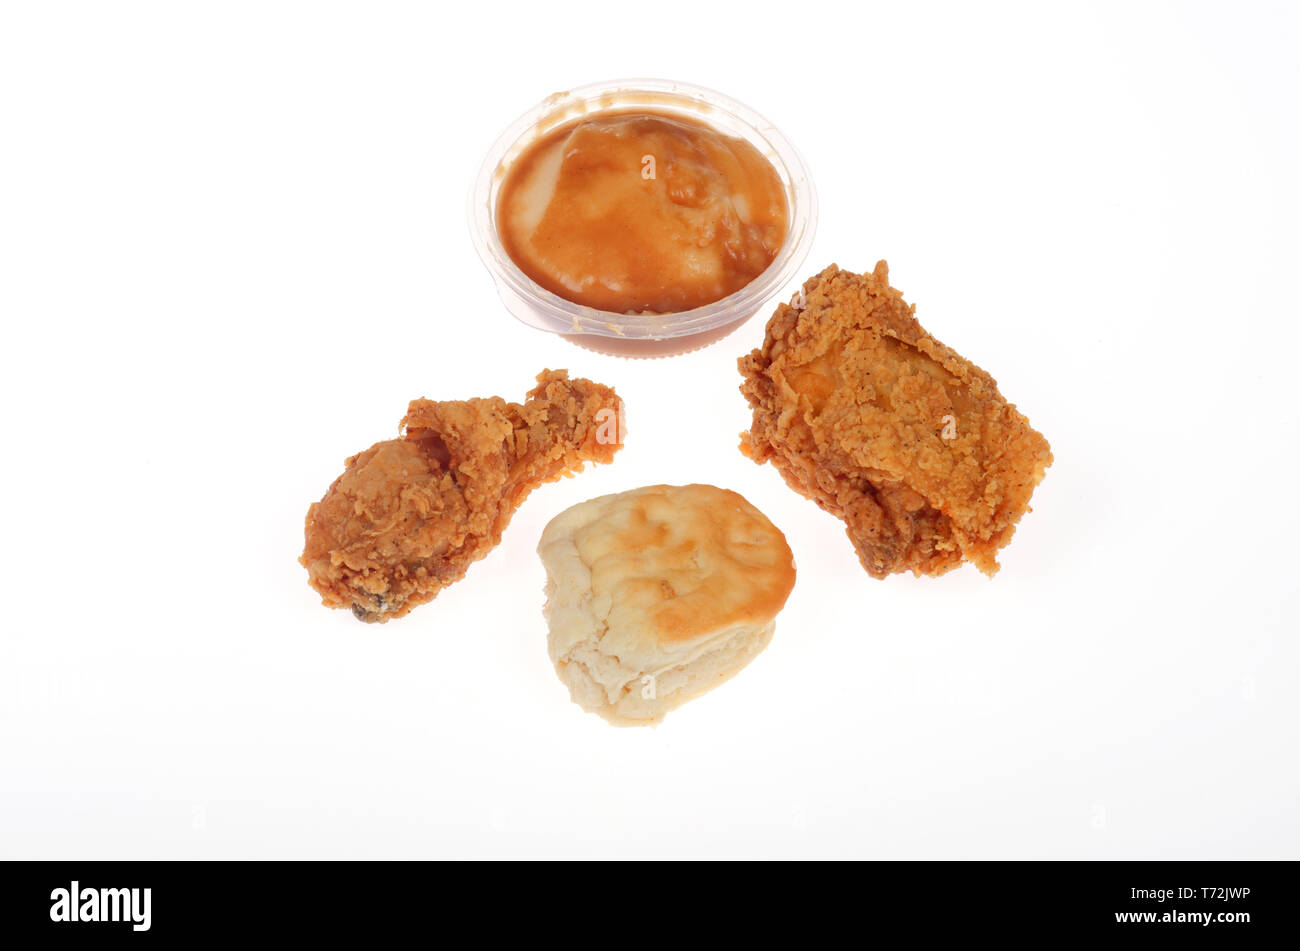 KFC 2 morceaux de poulet frit, le pilon et la cuisse, avec un biscuit et de la purée de pomme de terre et de la sauce Banque D'Images